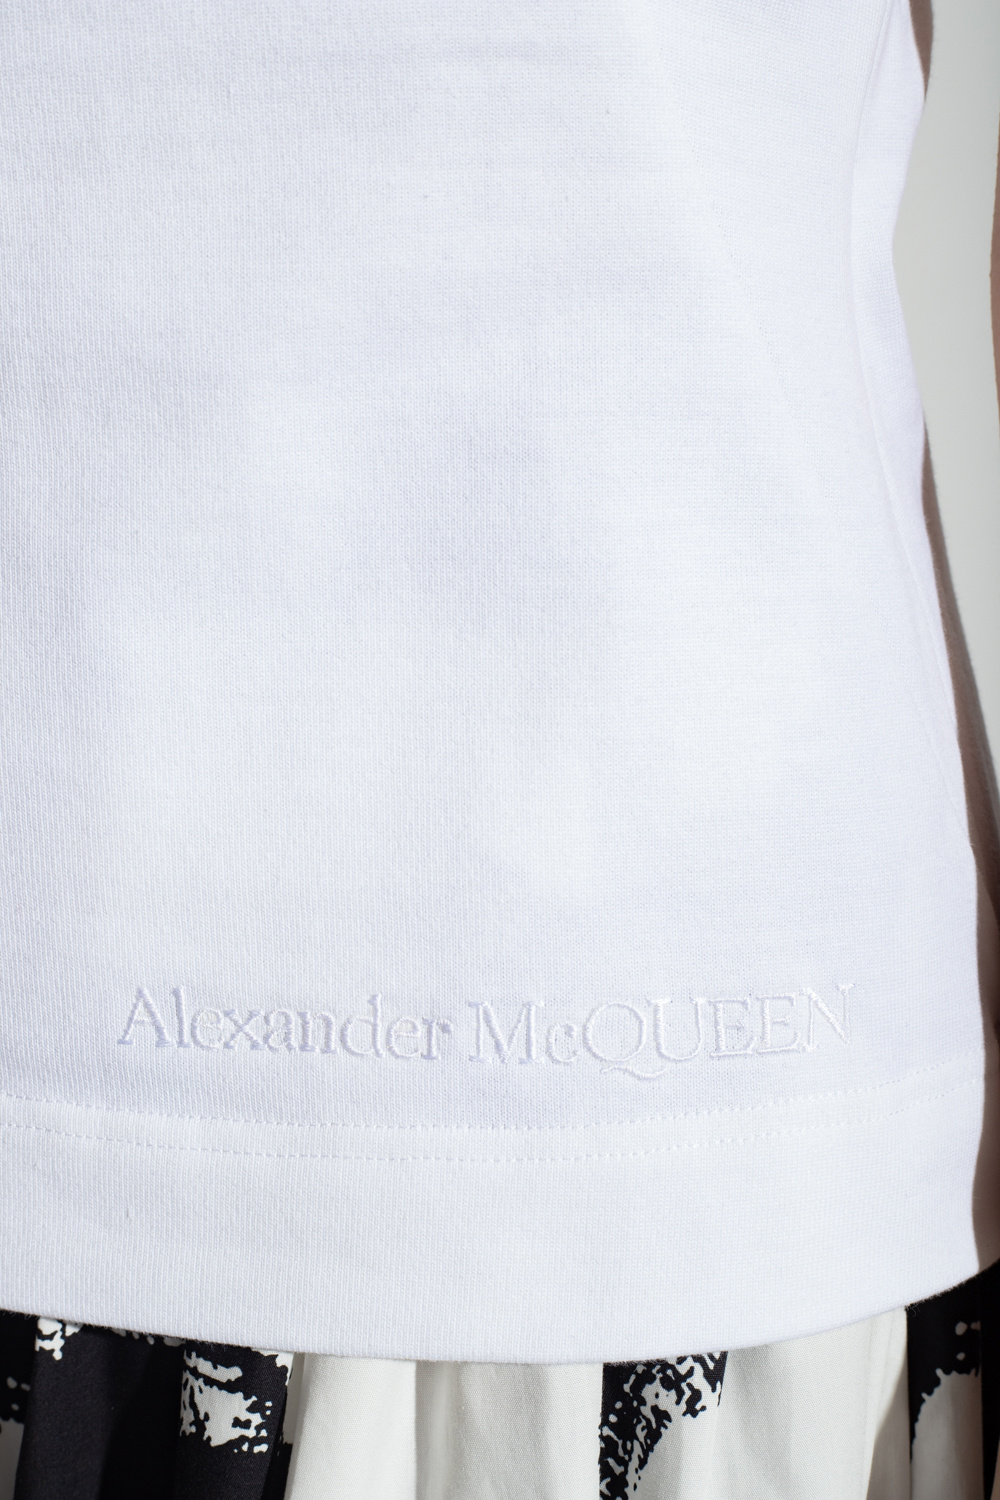 Alexander McQueen alexander mcqueen military high waist belt item